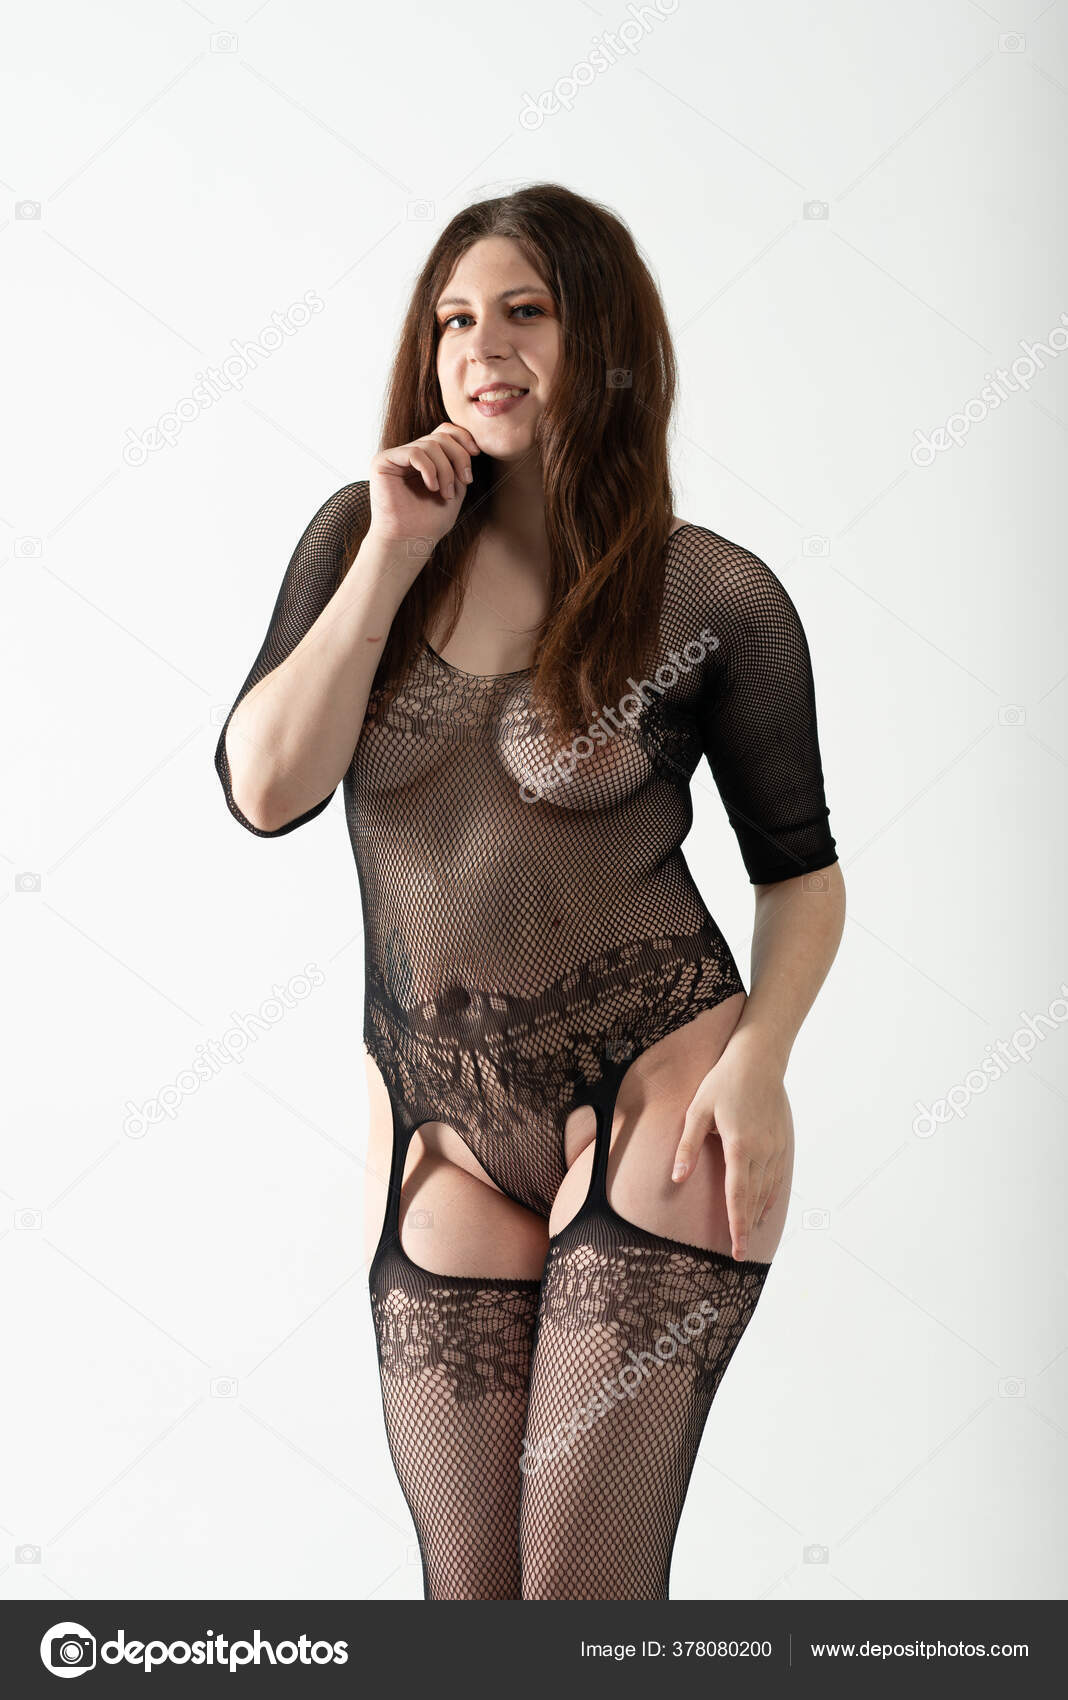 https://st4n.depositphotos.com/10086424/37808/i/1600/depositphotos_378080200-stock-photo-young-beautiful-girl-posing-nude.jpg